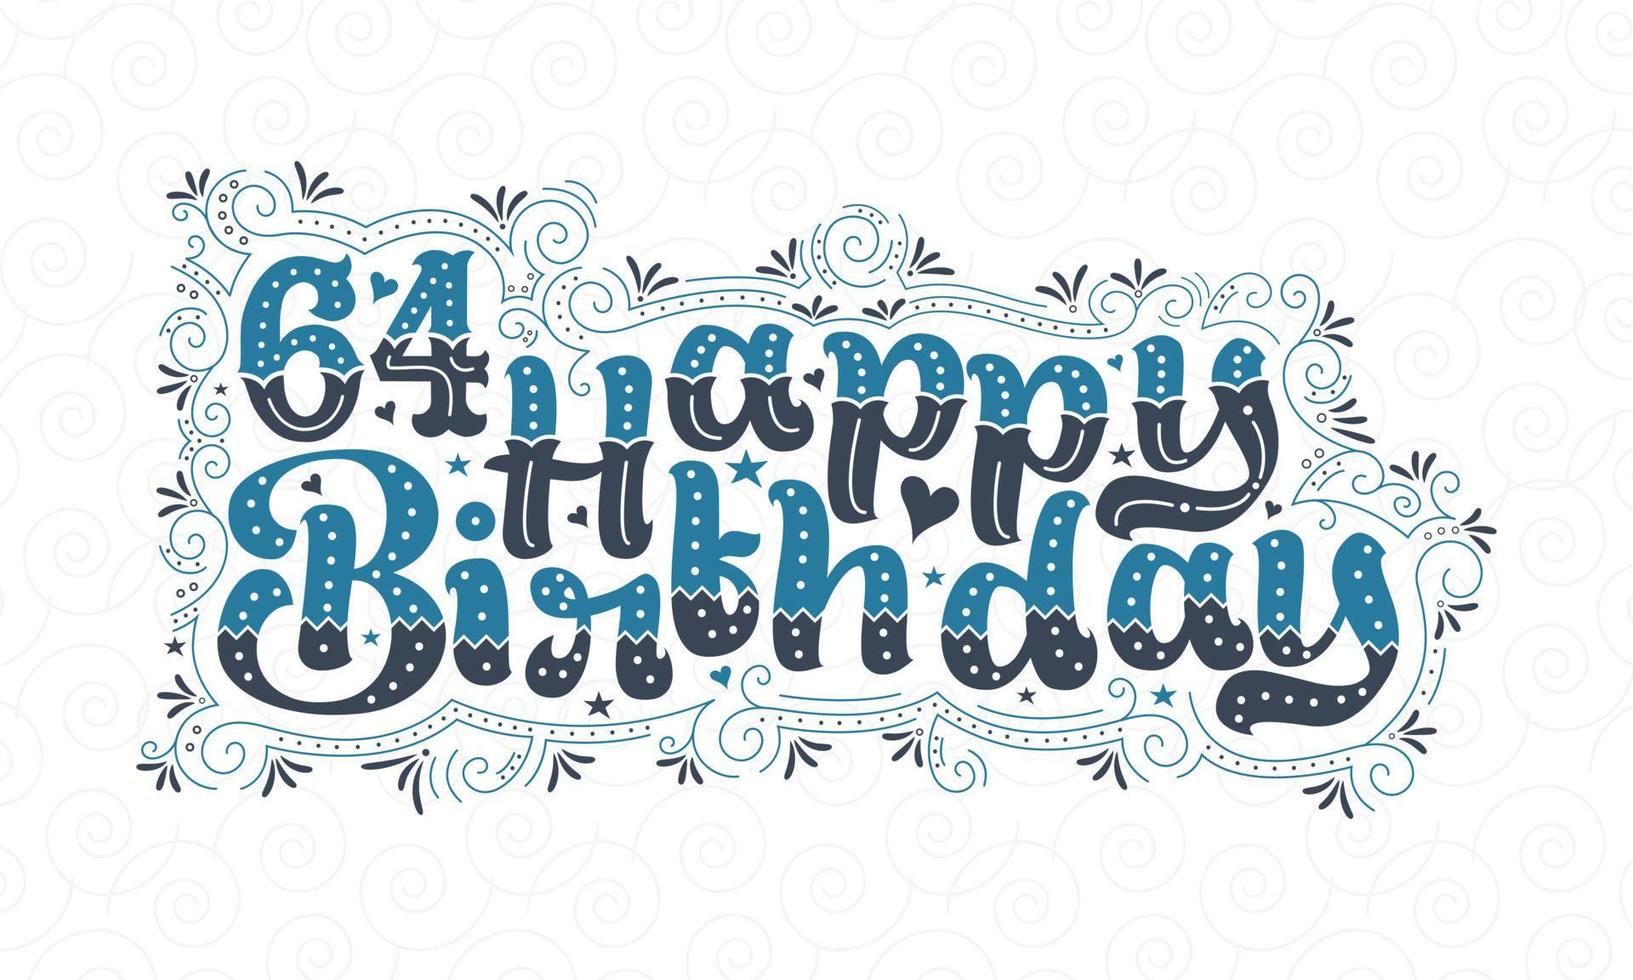 64. Happy Birthday Schriftzug, 64 Jahre Geburtstag schönes Typografie-Design mit blauen und schwarzen Punkten, Linien und Blättern. vektor